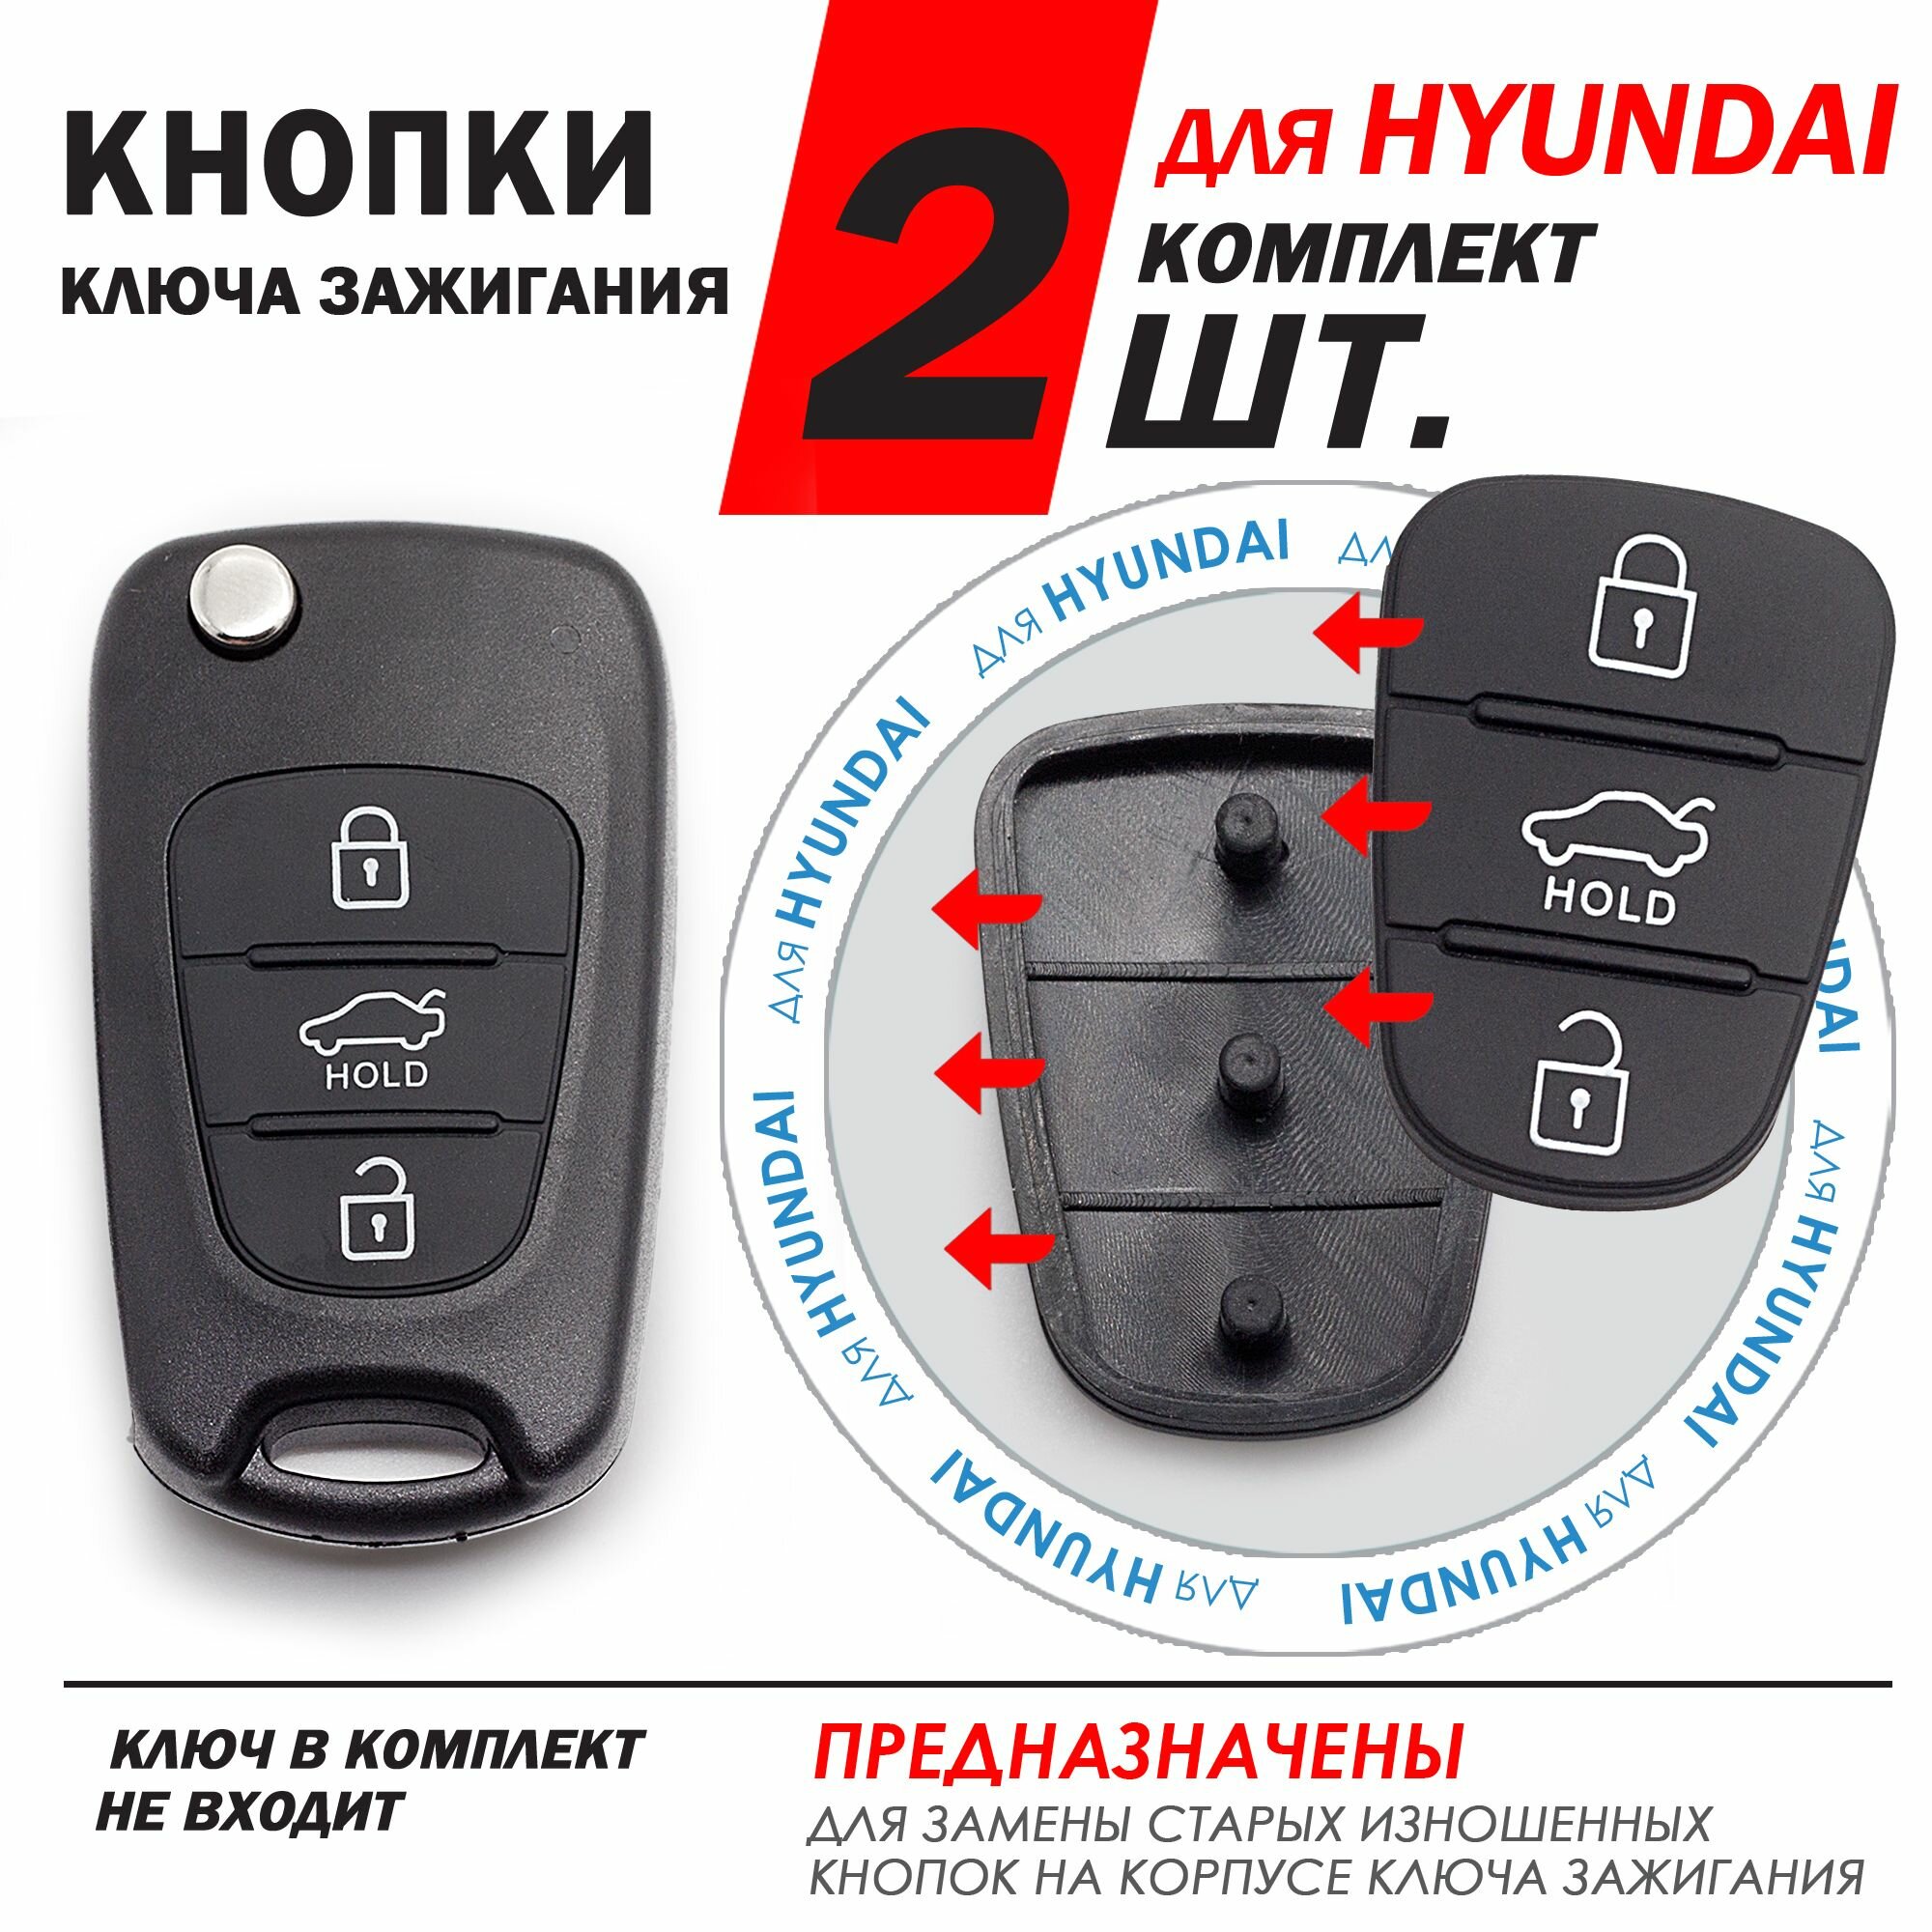 Кнопки корпуса ключа зажигания для Hyundai / Хендай - комплект 2 штуки (для 3-x кнопочного ключа с Hold)